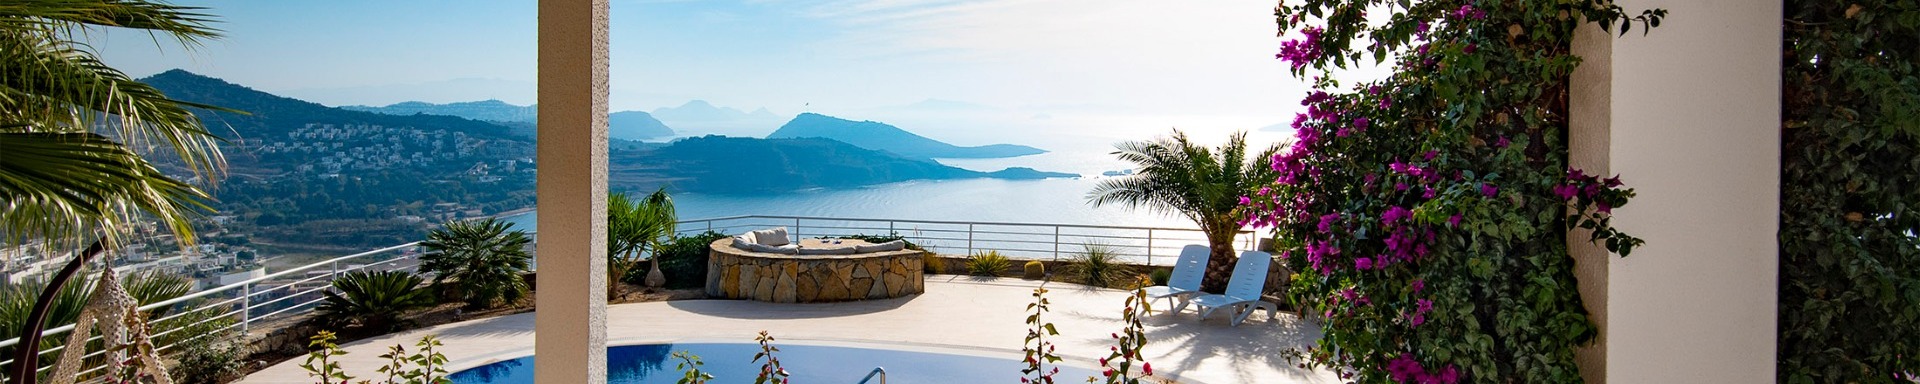 Luxury Holiday Villas for rent Bodrum Turkey